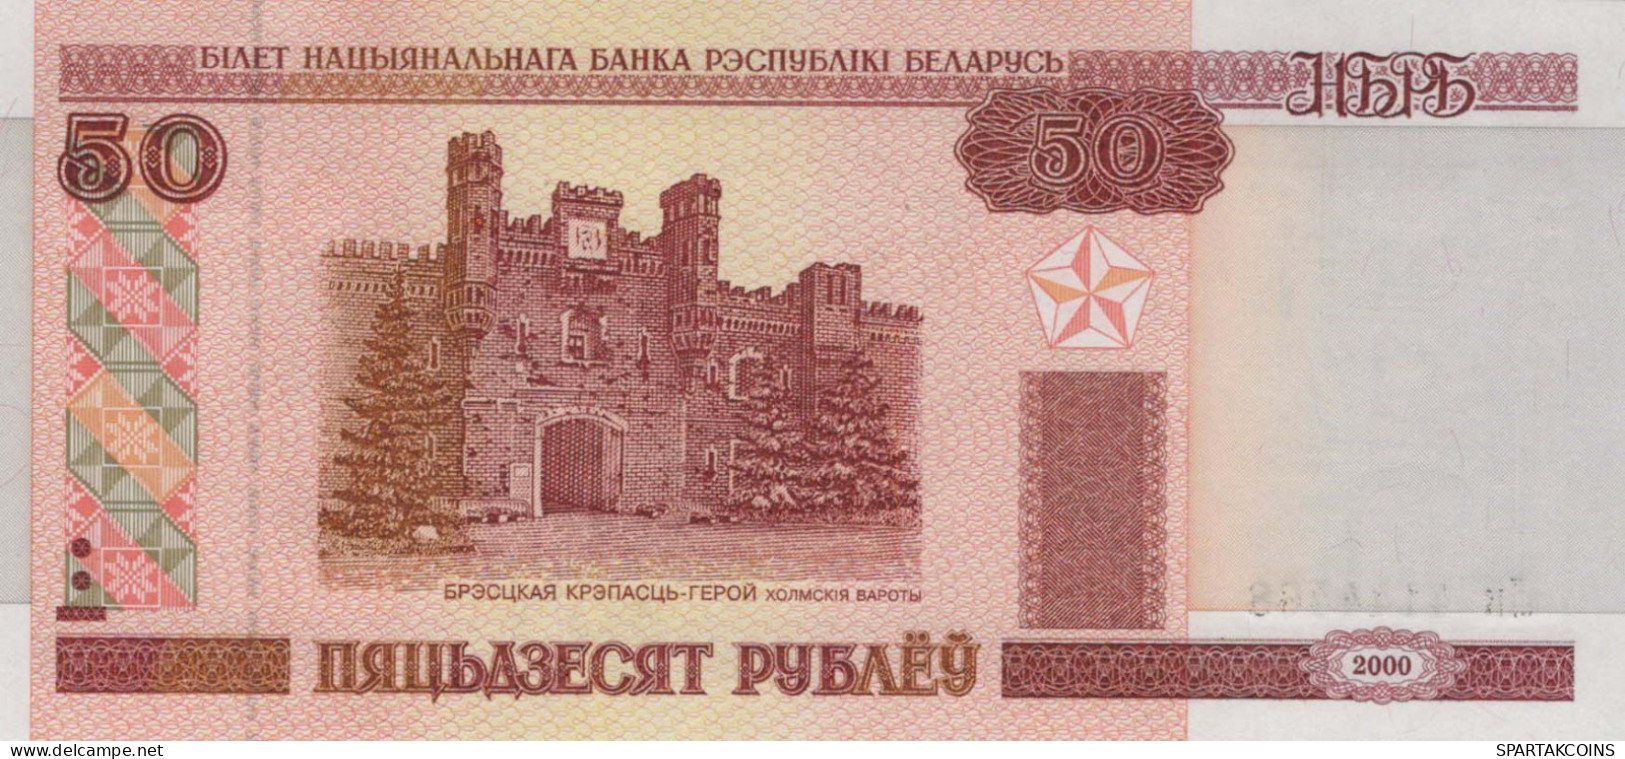 50 RUBLES 2000 BELARUS Paper Money Banknote #PJ300 - Lokale Ausgaben